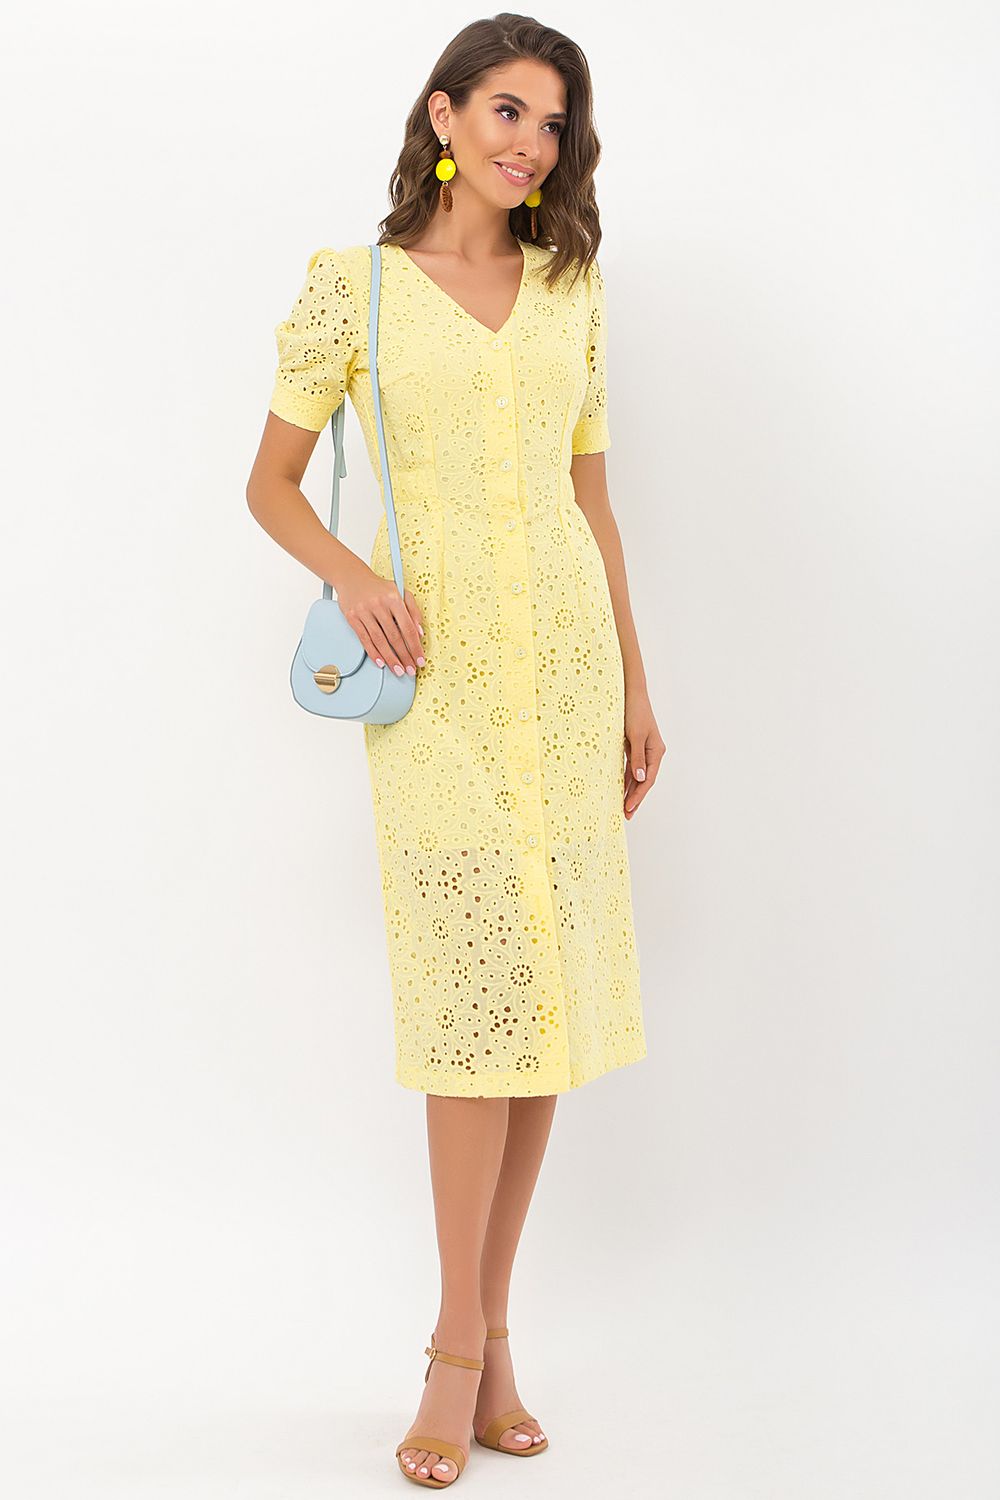 Модное летнее платье из прошвы желтое - фото